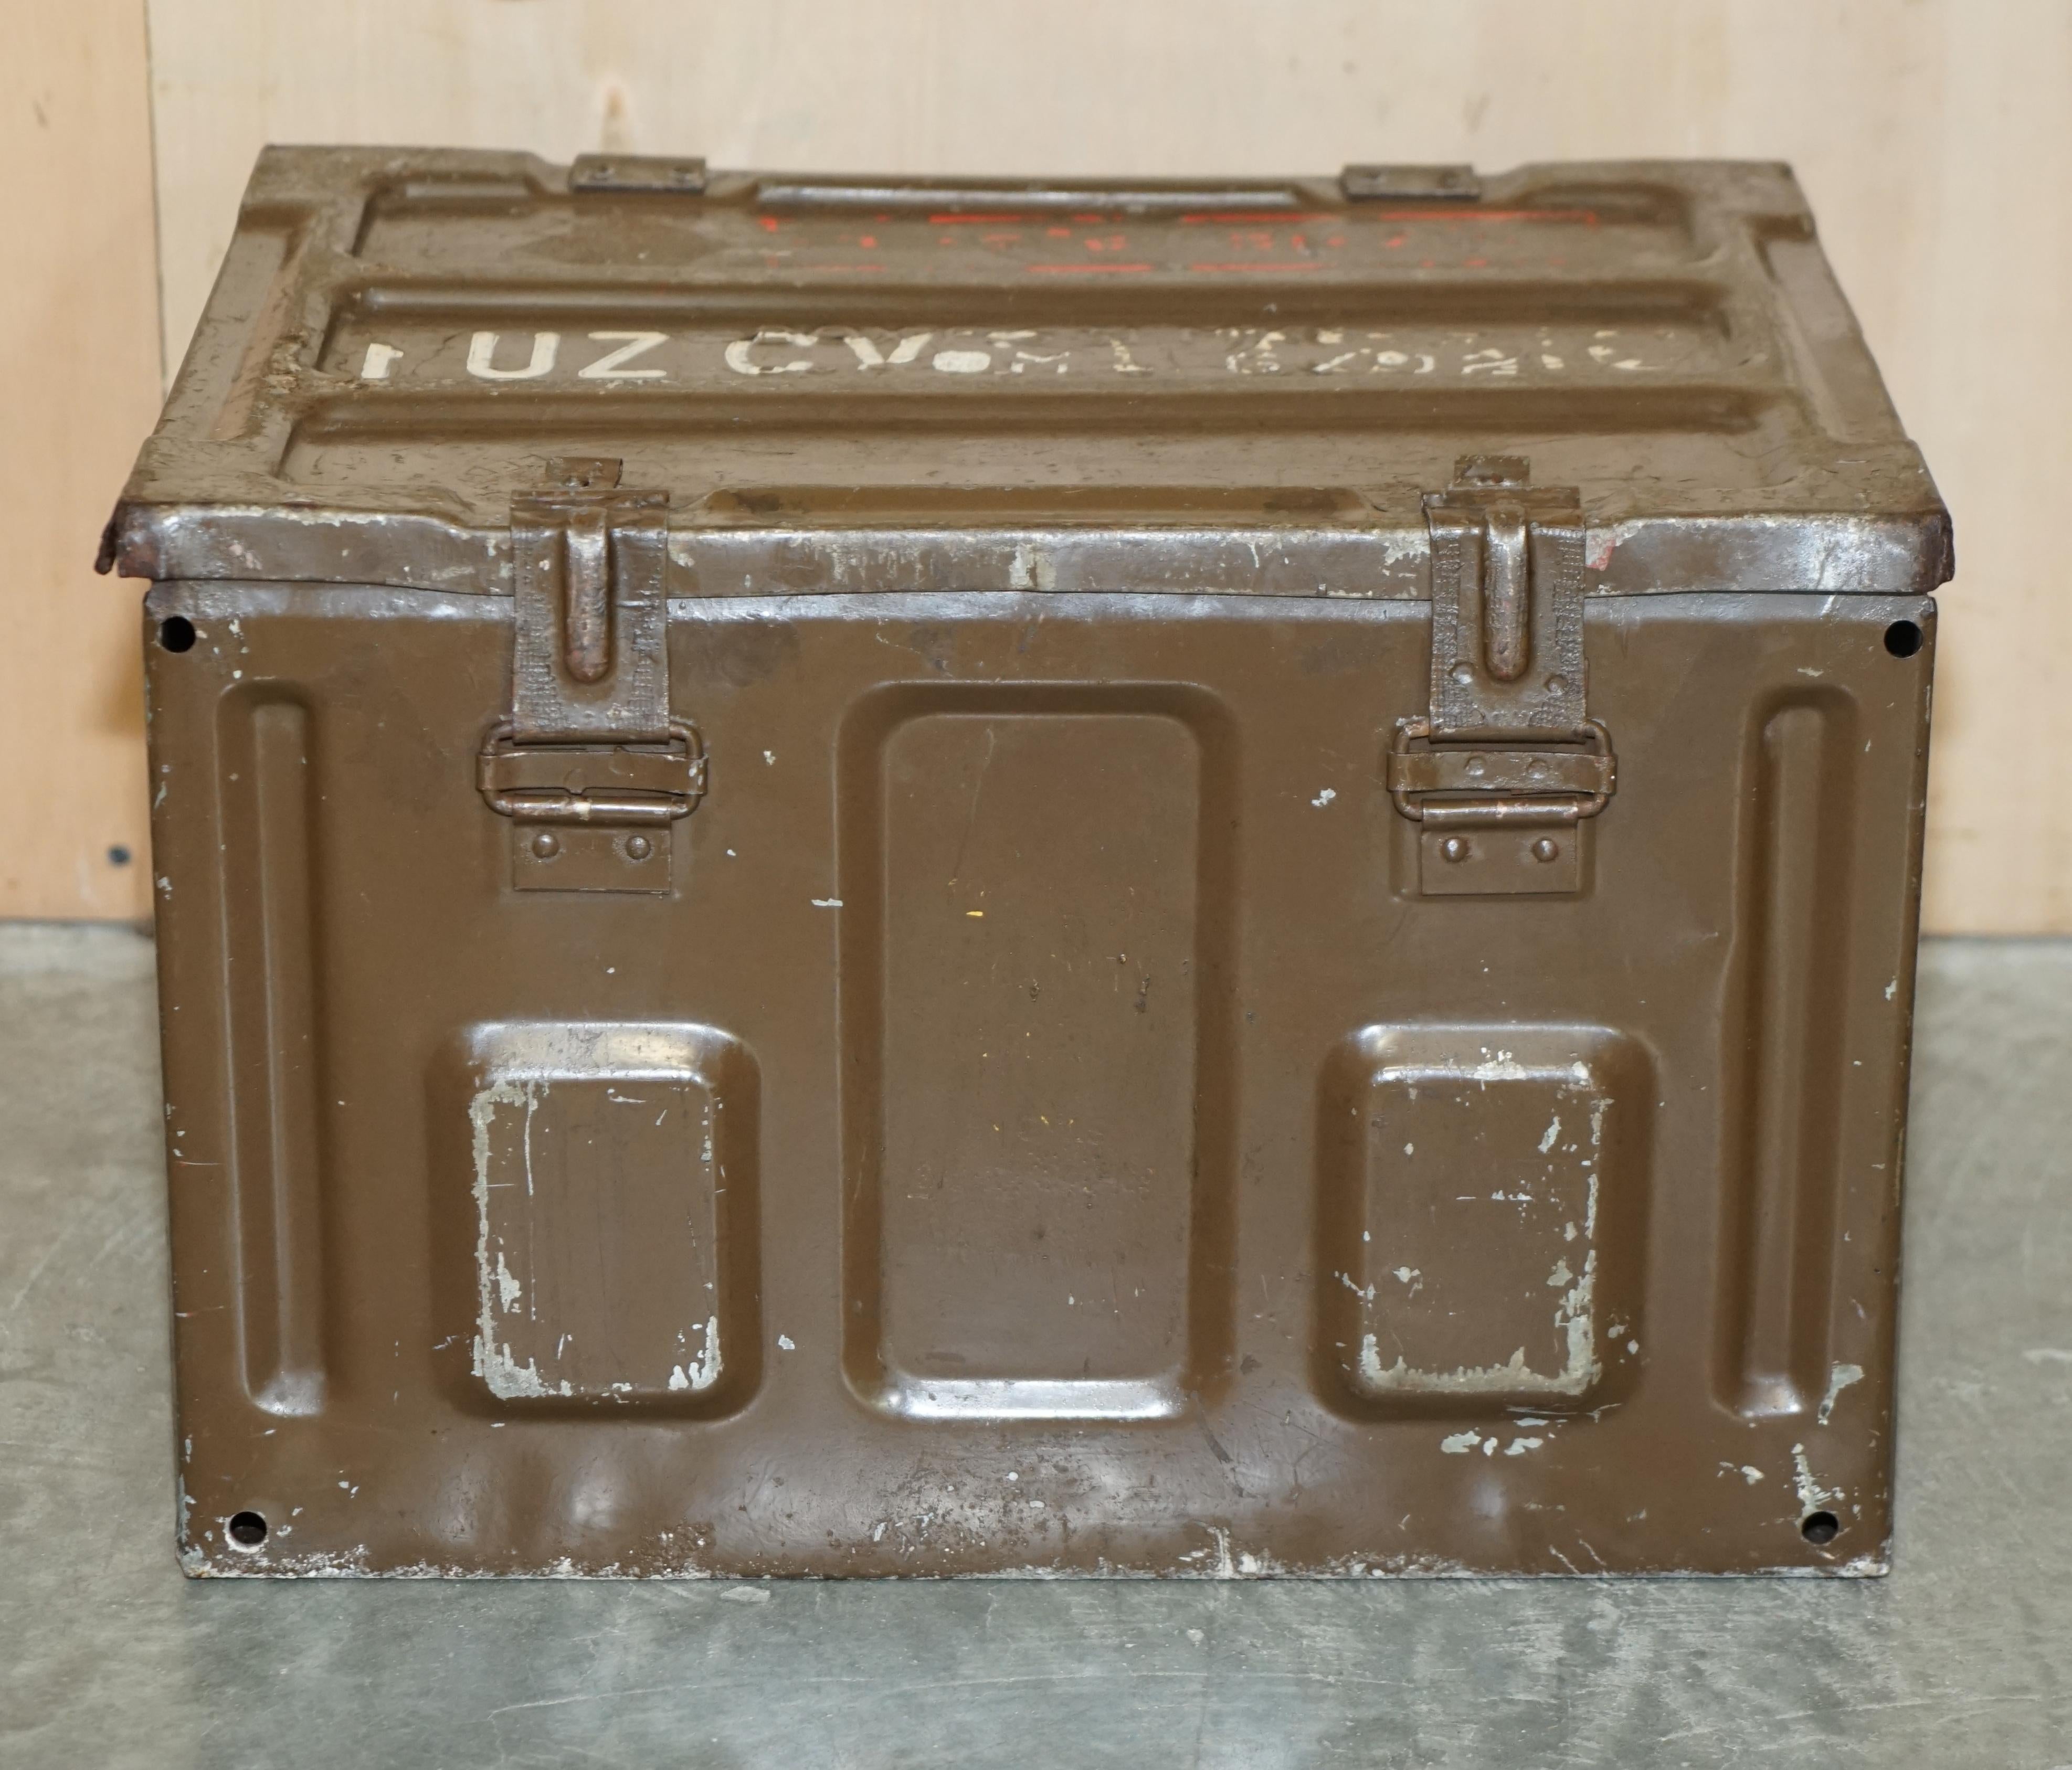 Nous sommes ravis d'offrir à la vente cette boîte à munitions d'époque, utilisée pendant la campagne militaire de la Seconde Guerre mondiale, avec toute la patine d'origine.

J'en ai deux à vendre, la deuxième pièce est listée sous mes autres